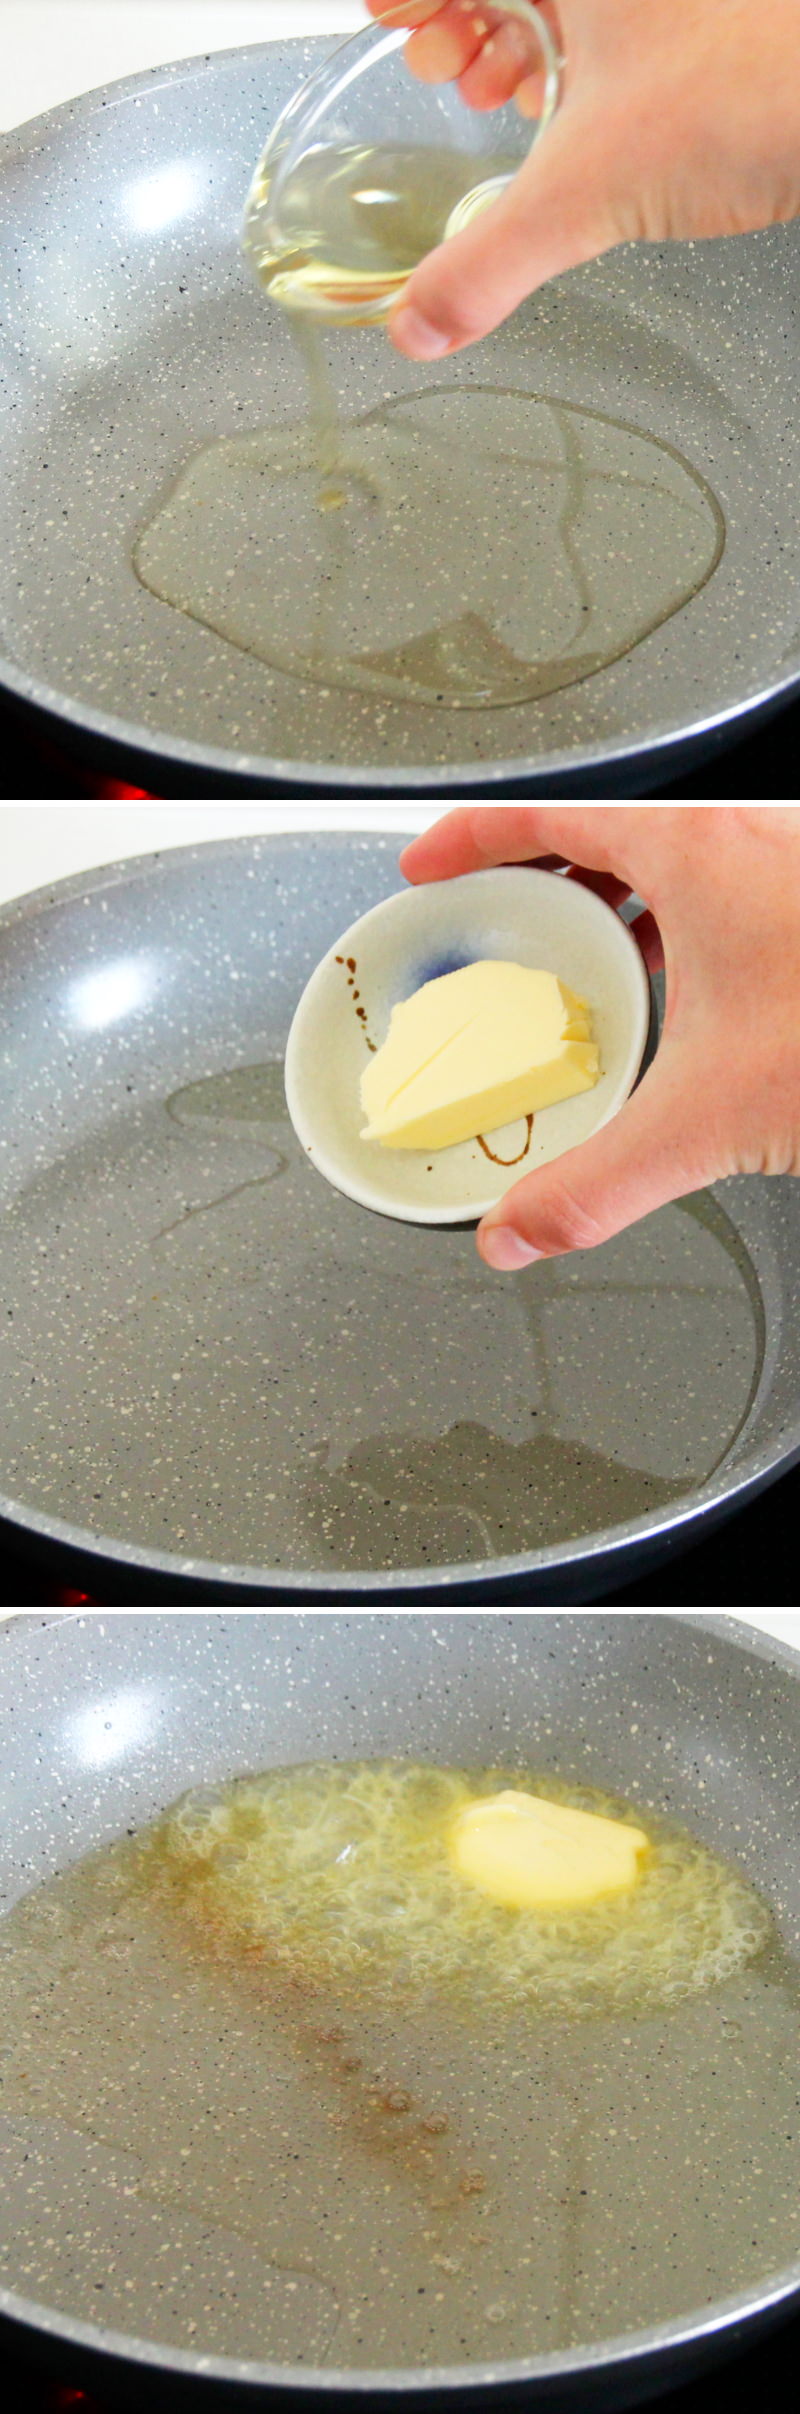 Teriyaki Lachs Schritt 5 Butter schmelzen